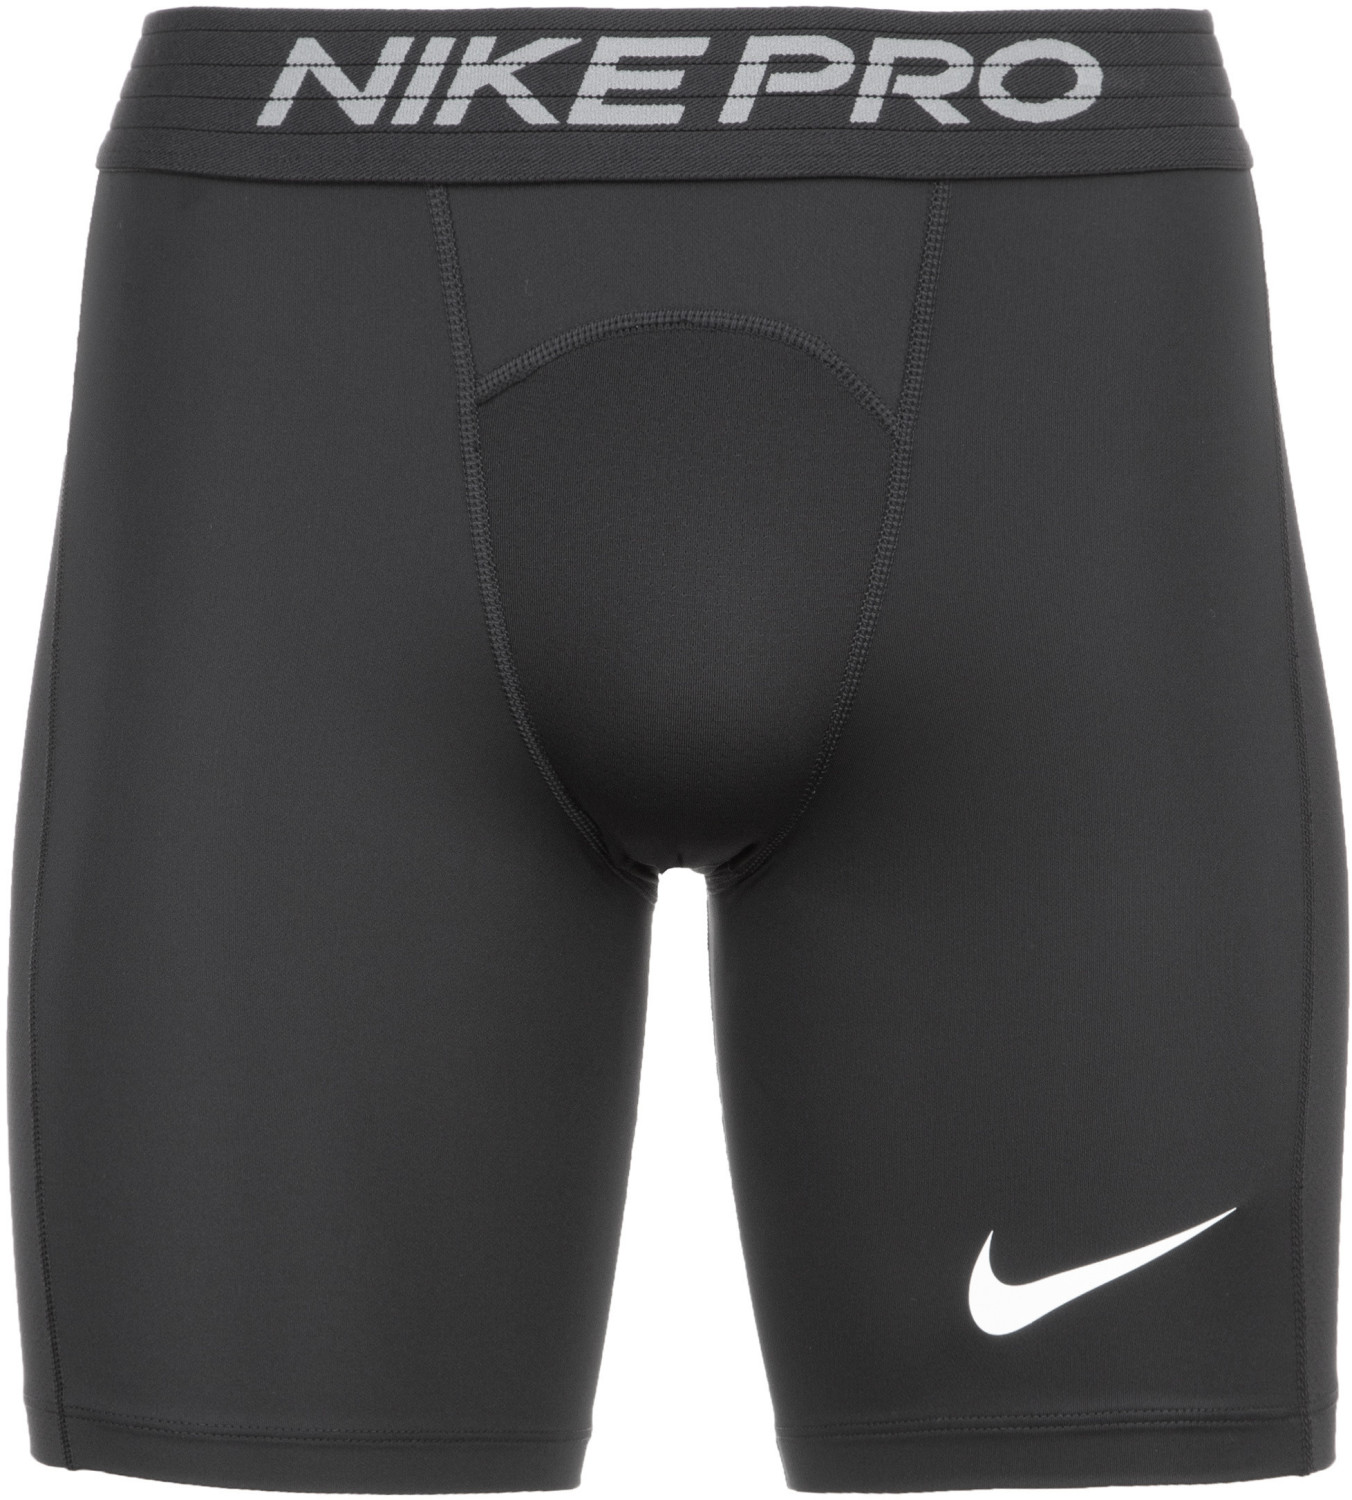 Nike Pro Men's Shorts (BV5635) black/white